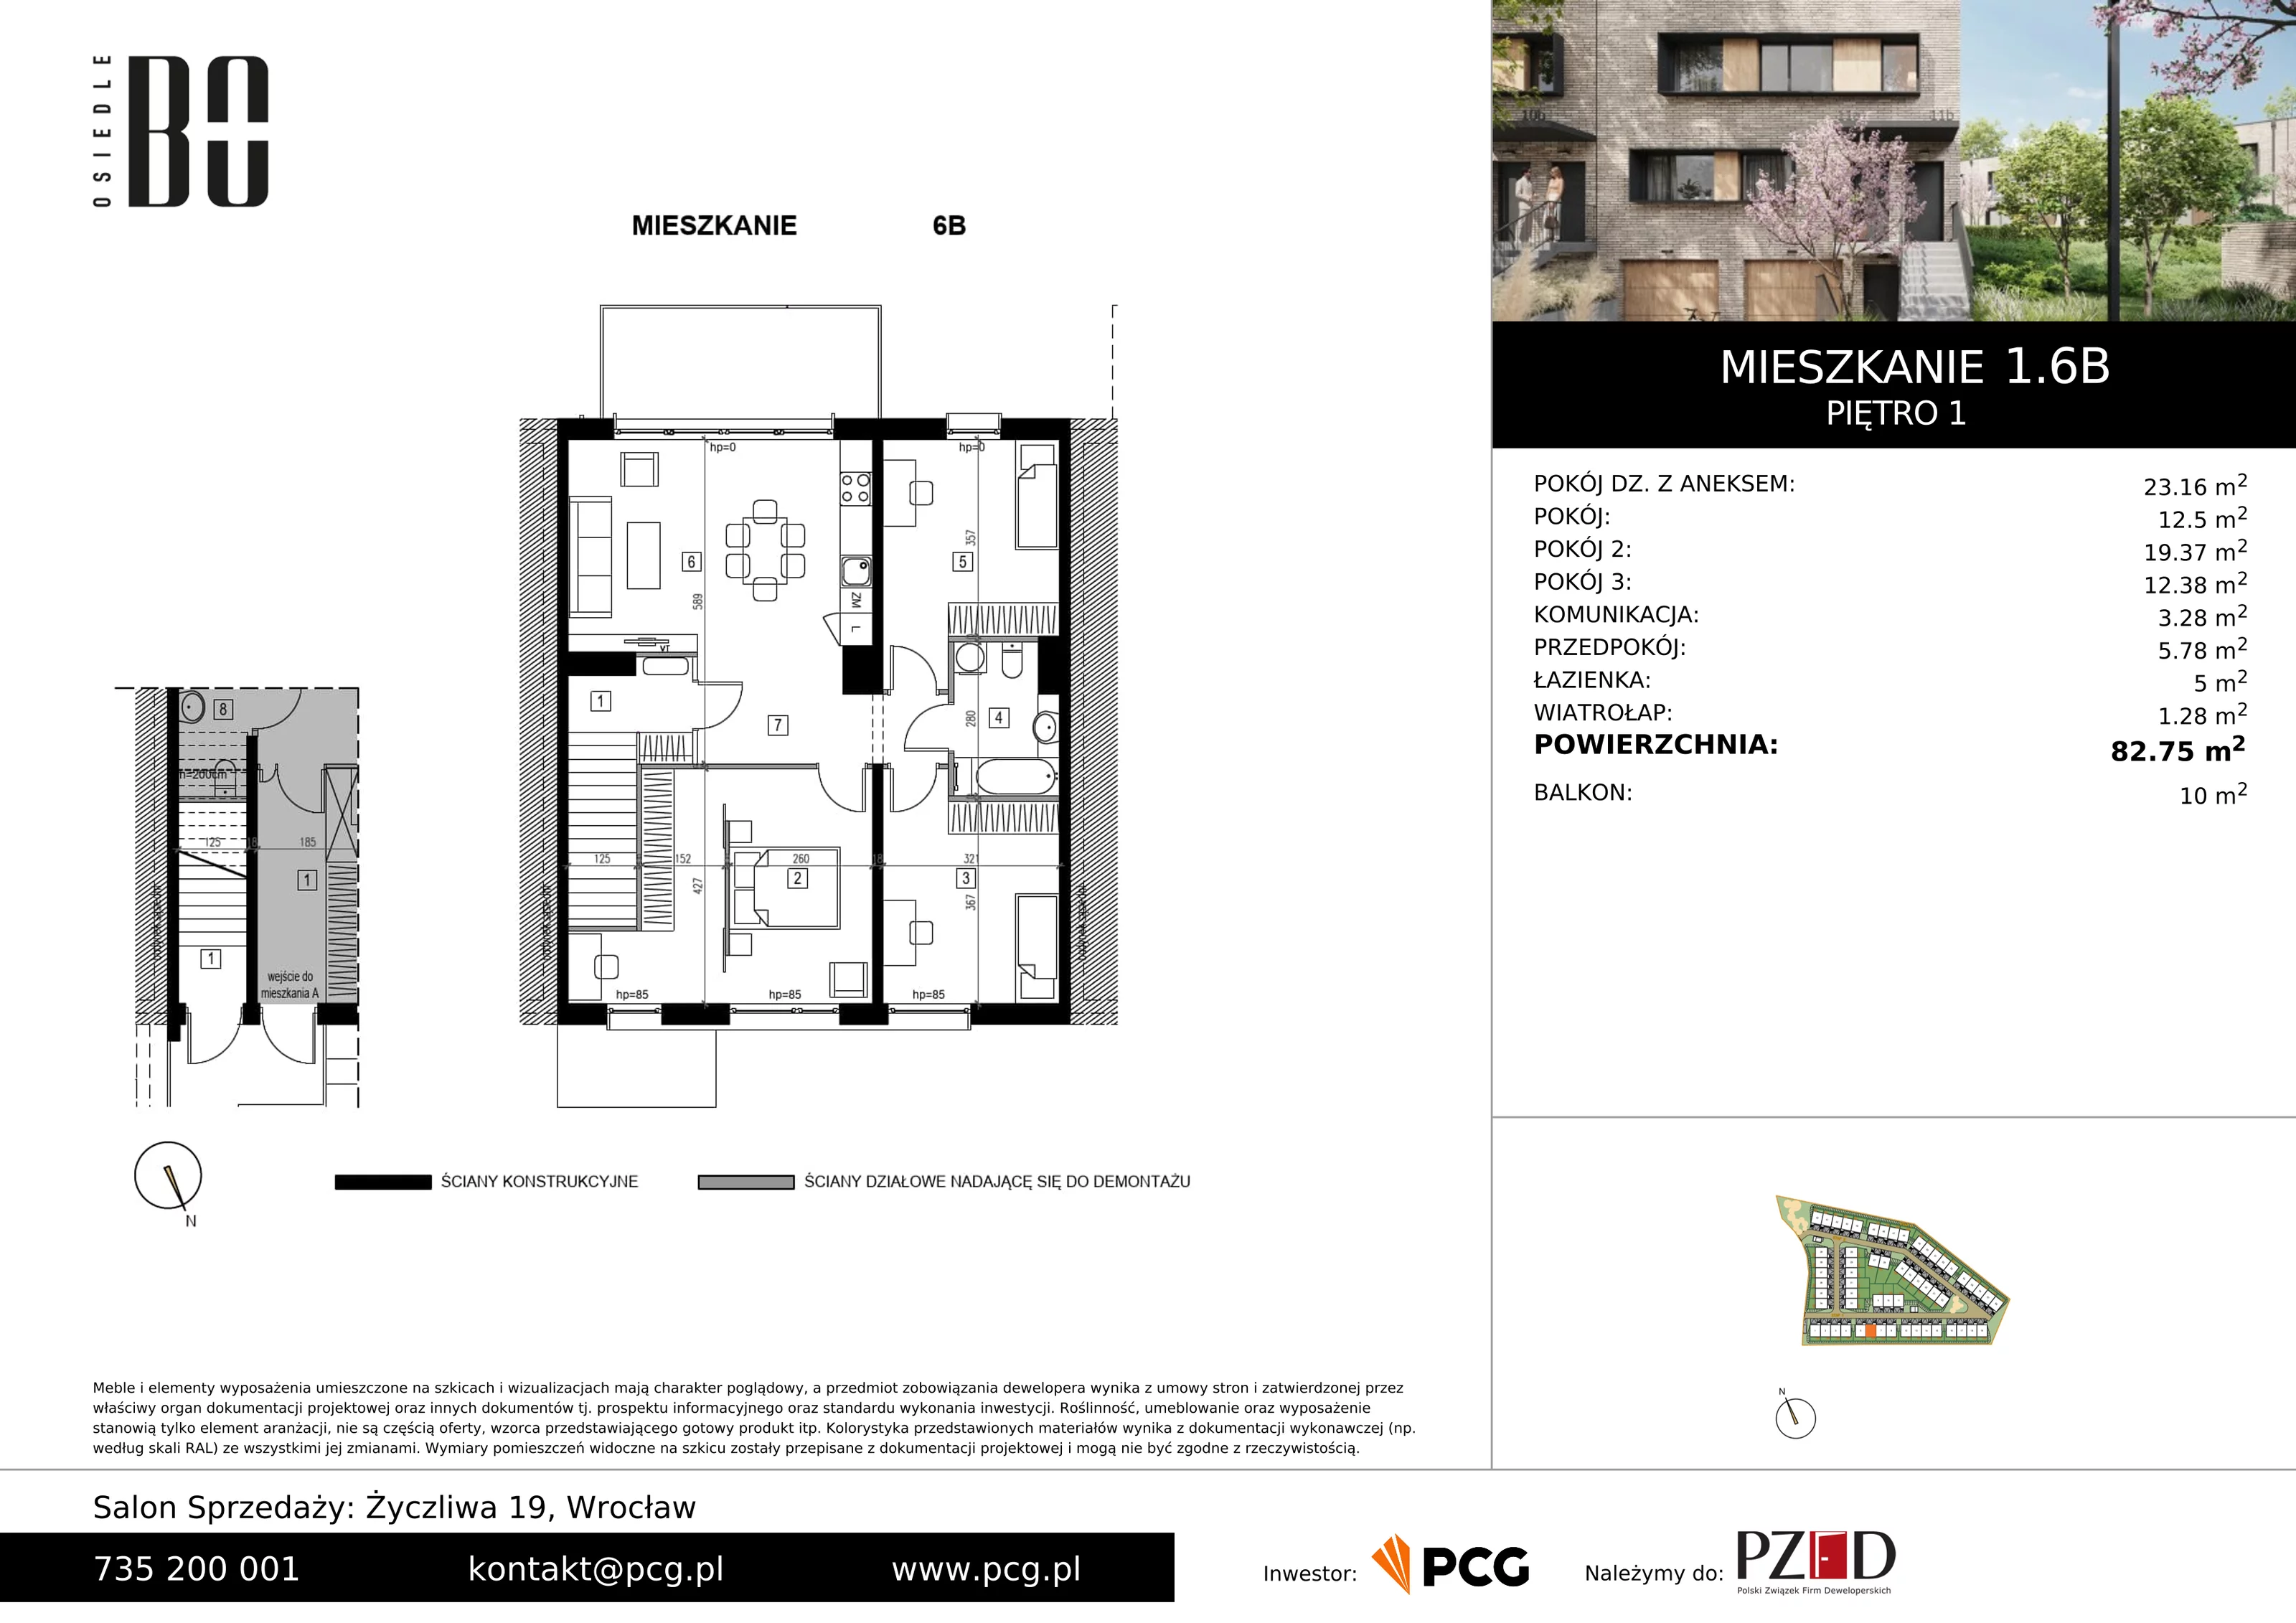 Apartament 82,75 m², piętro 1, oferta nr 1.6B, Osiedle BO, Wrocław, Kowale, ul. Bociana